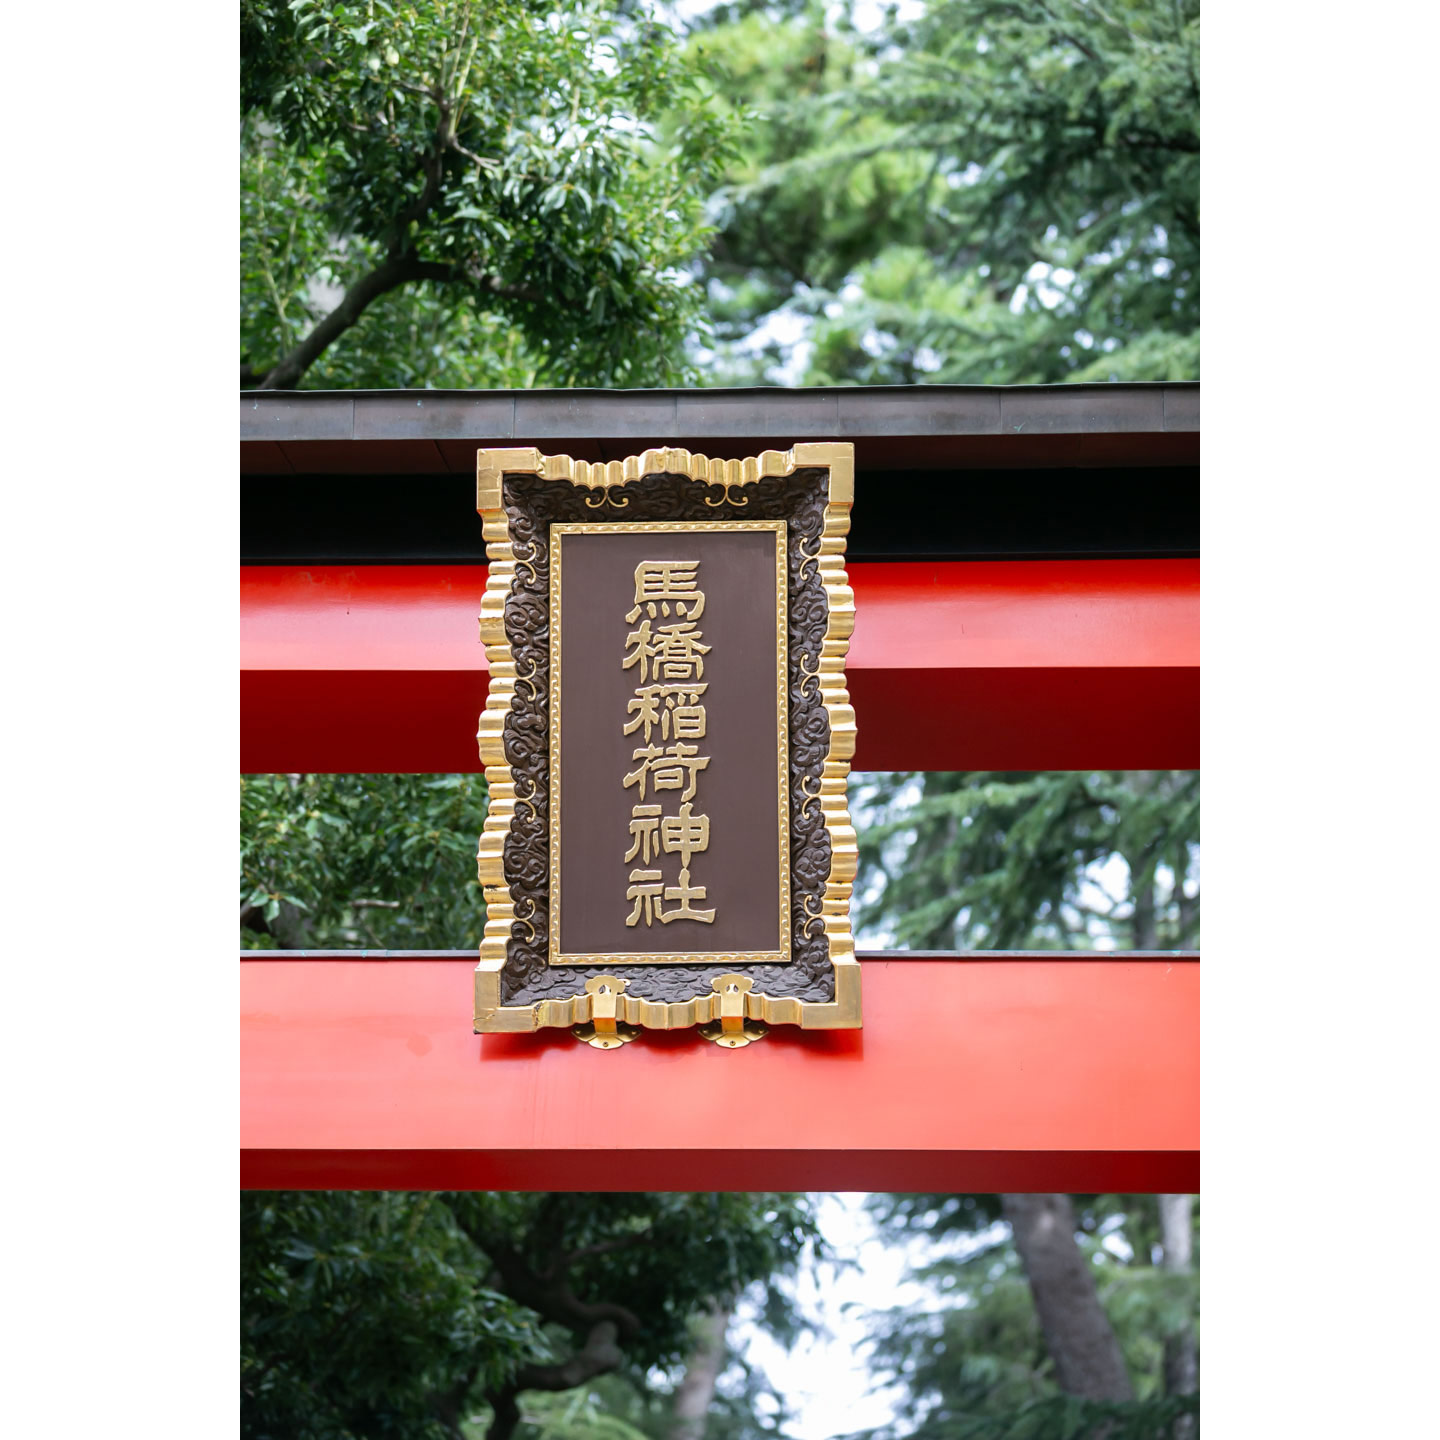 馬橋稲荷神社 神社のプレート